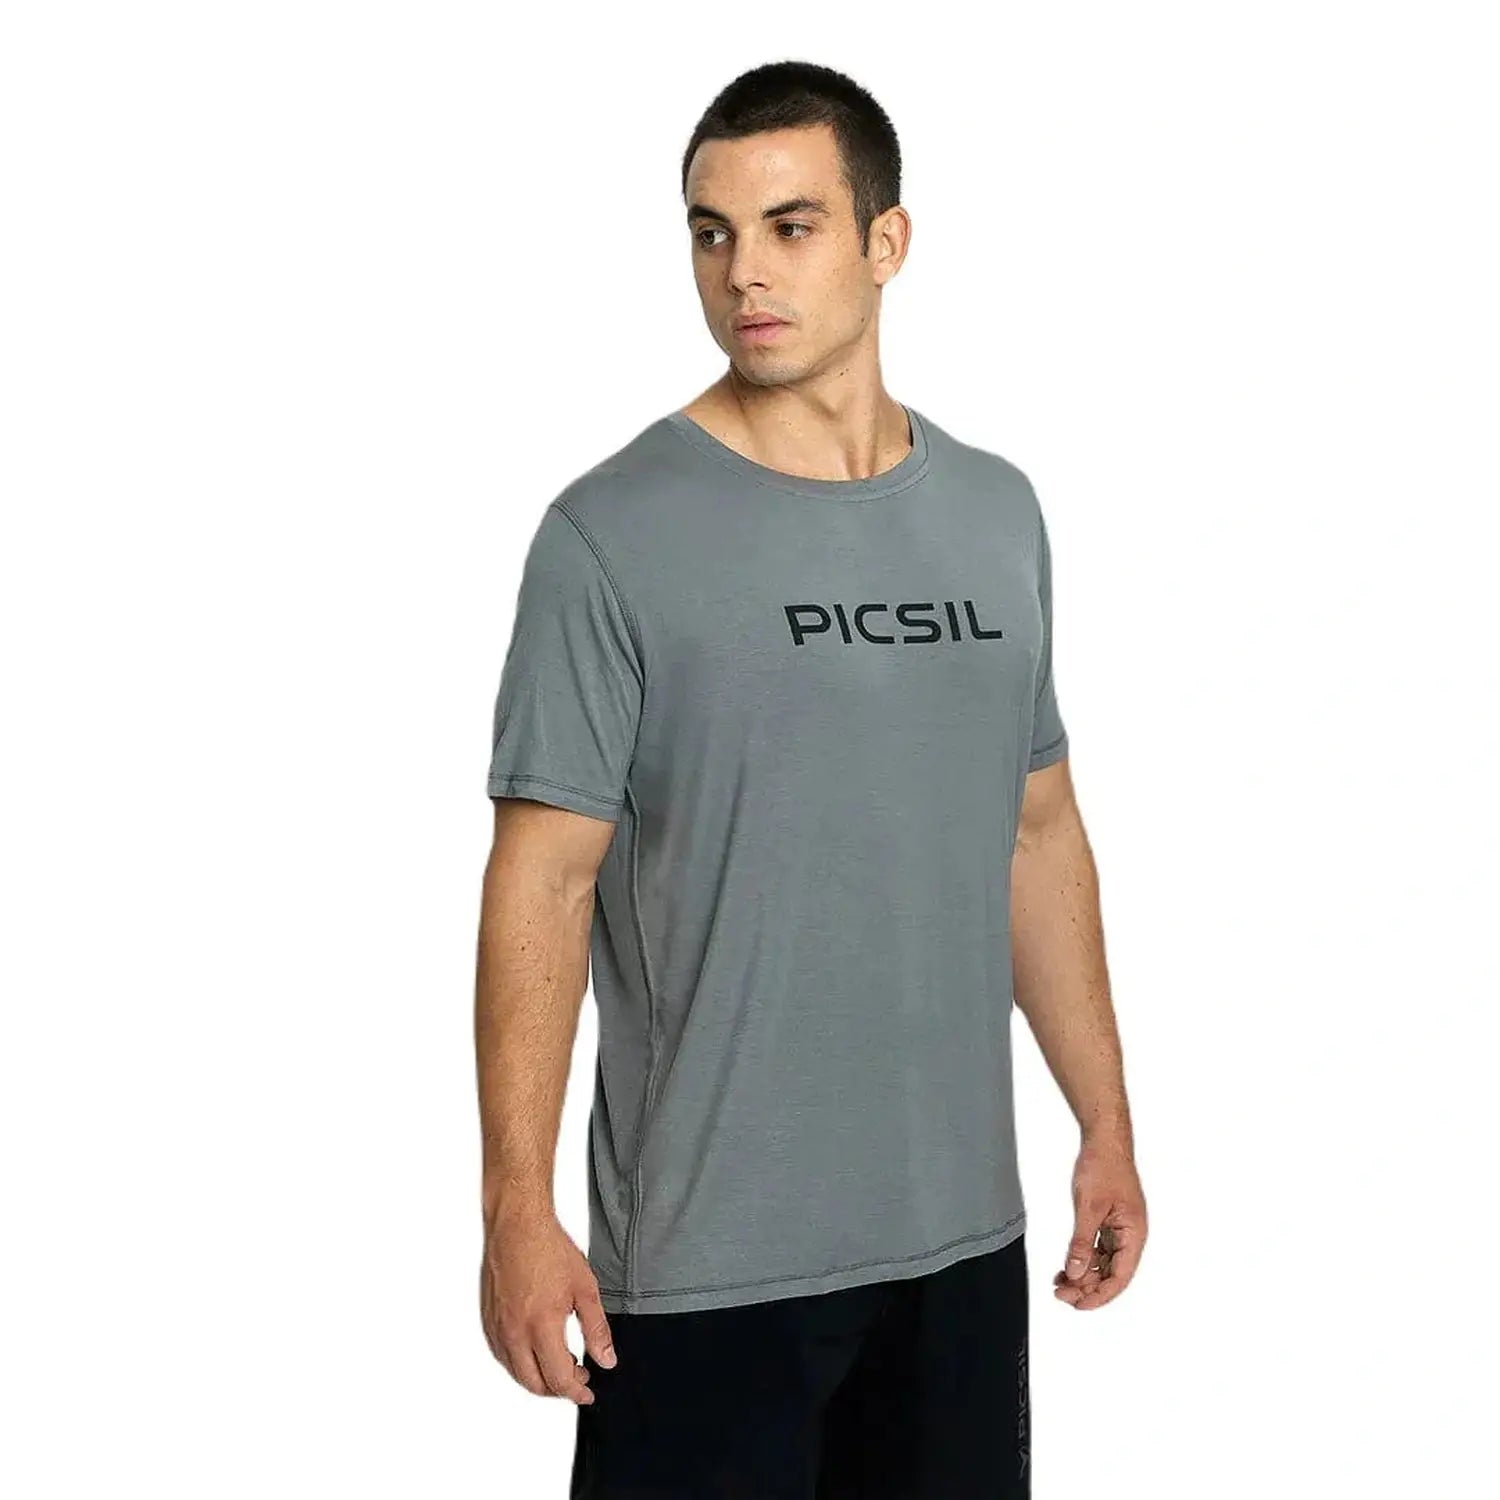 PicSil Herren Sport T-Shirt Kurzarm (Core) Grün kaufen bei HighPowered.ch